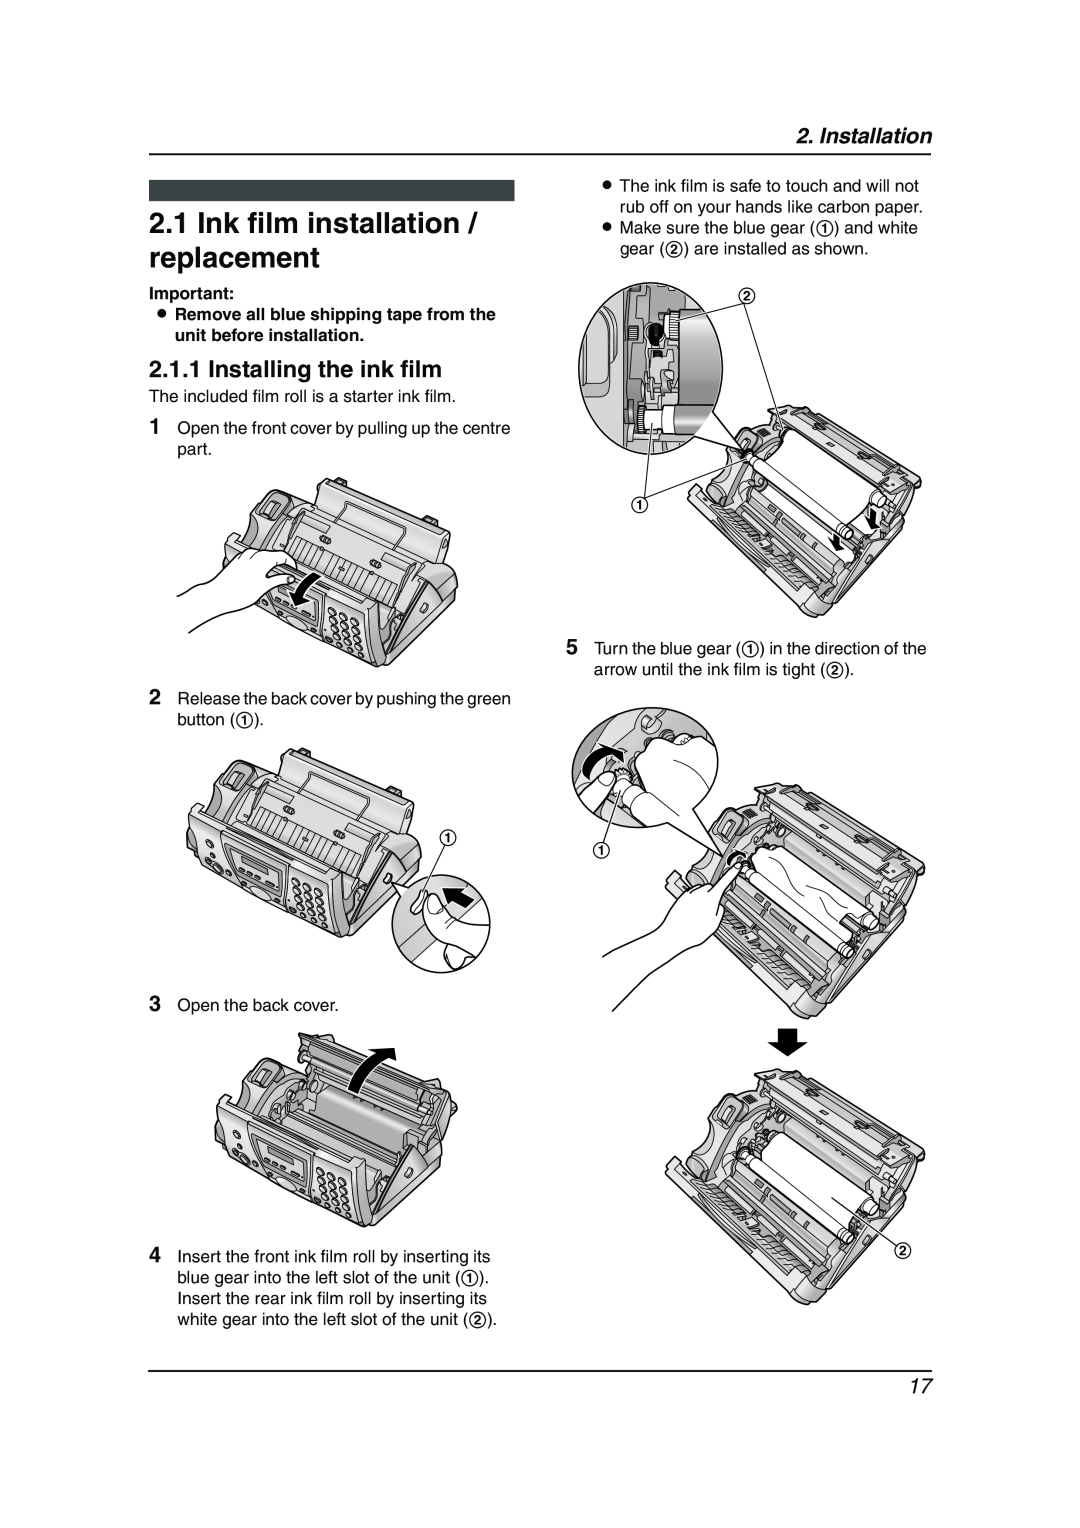 Panasonic KX-FC241AL manual Ink film installation / replacement, Installing the ink film, Installation 